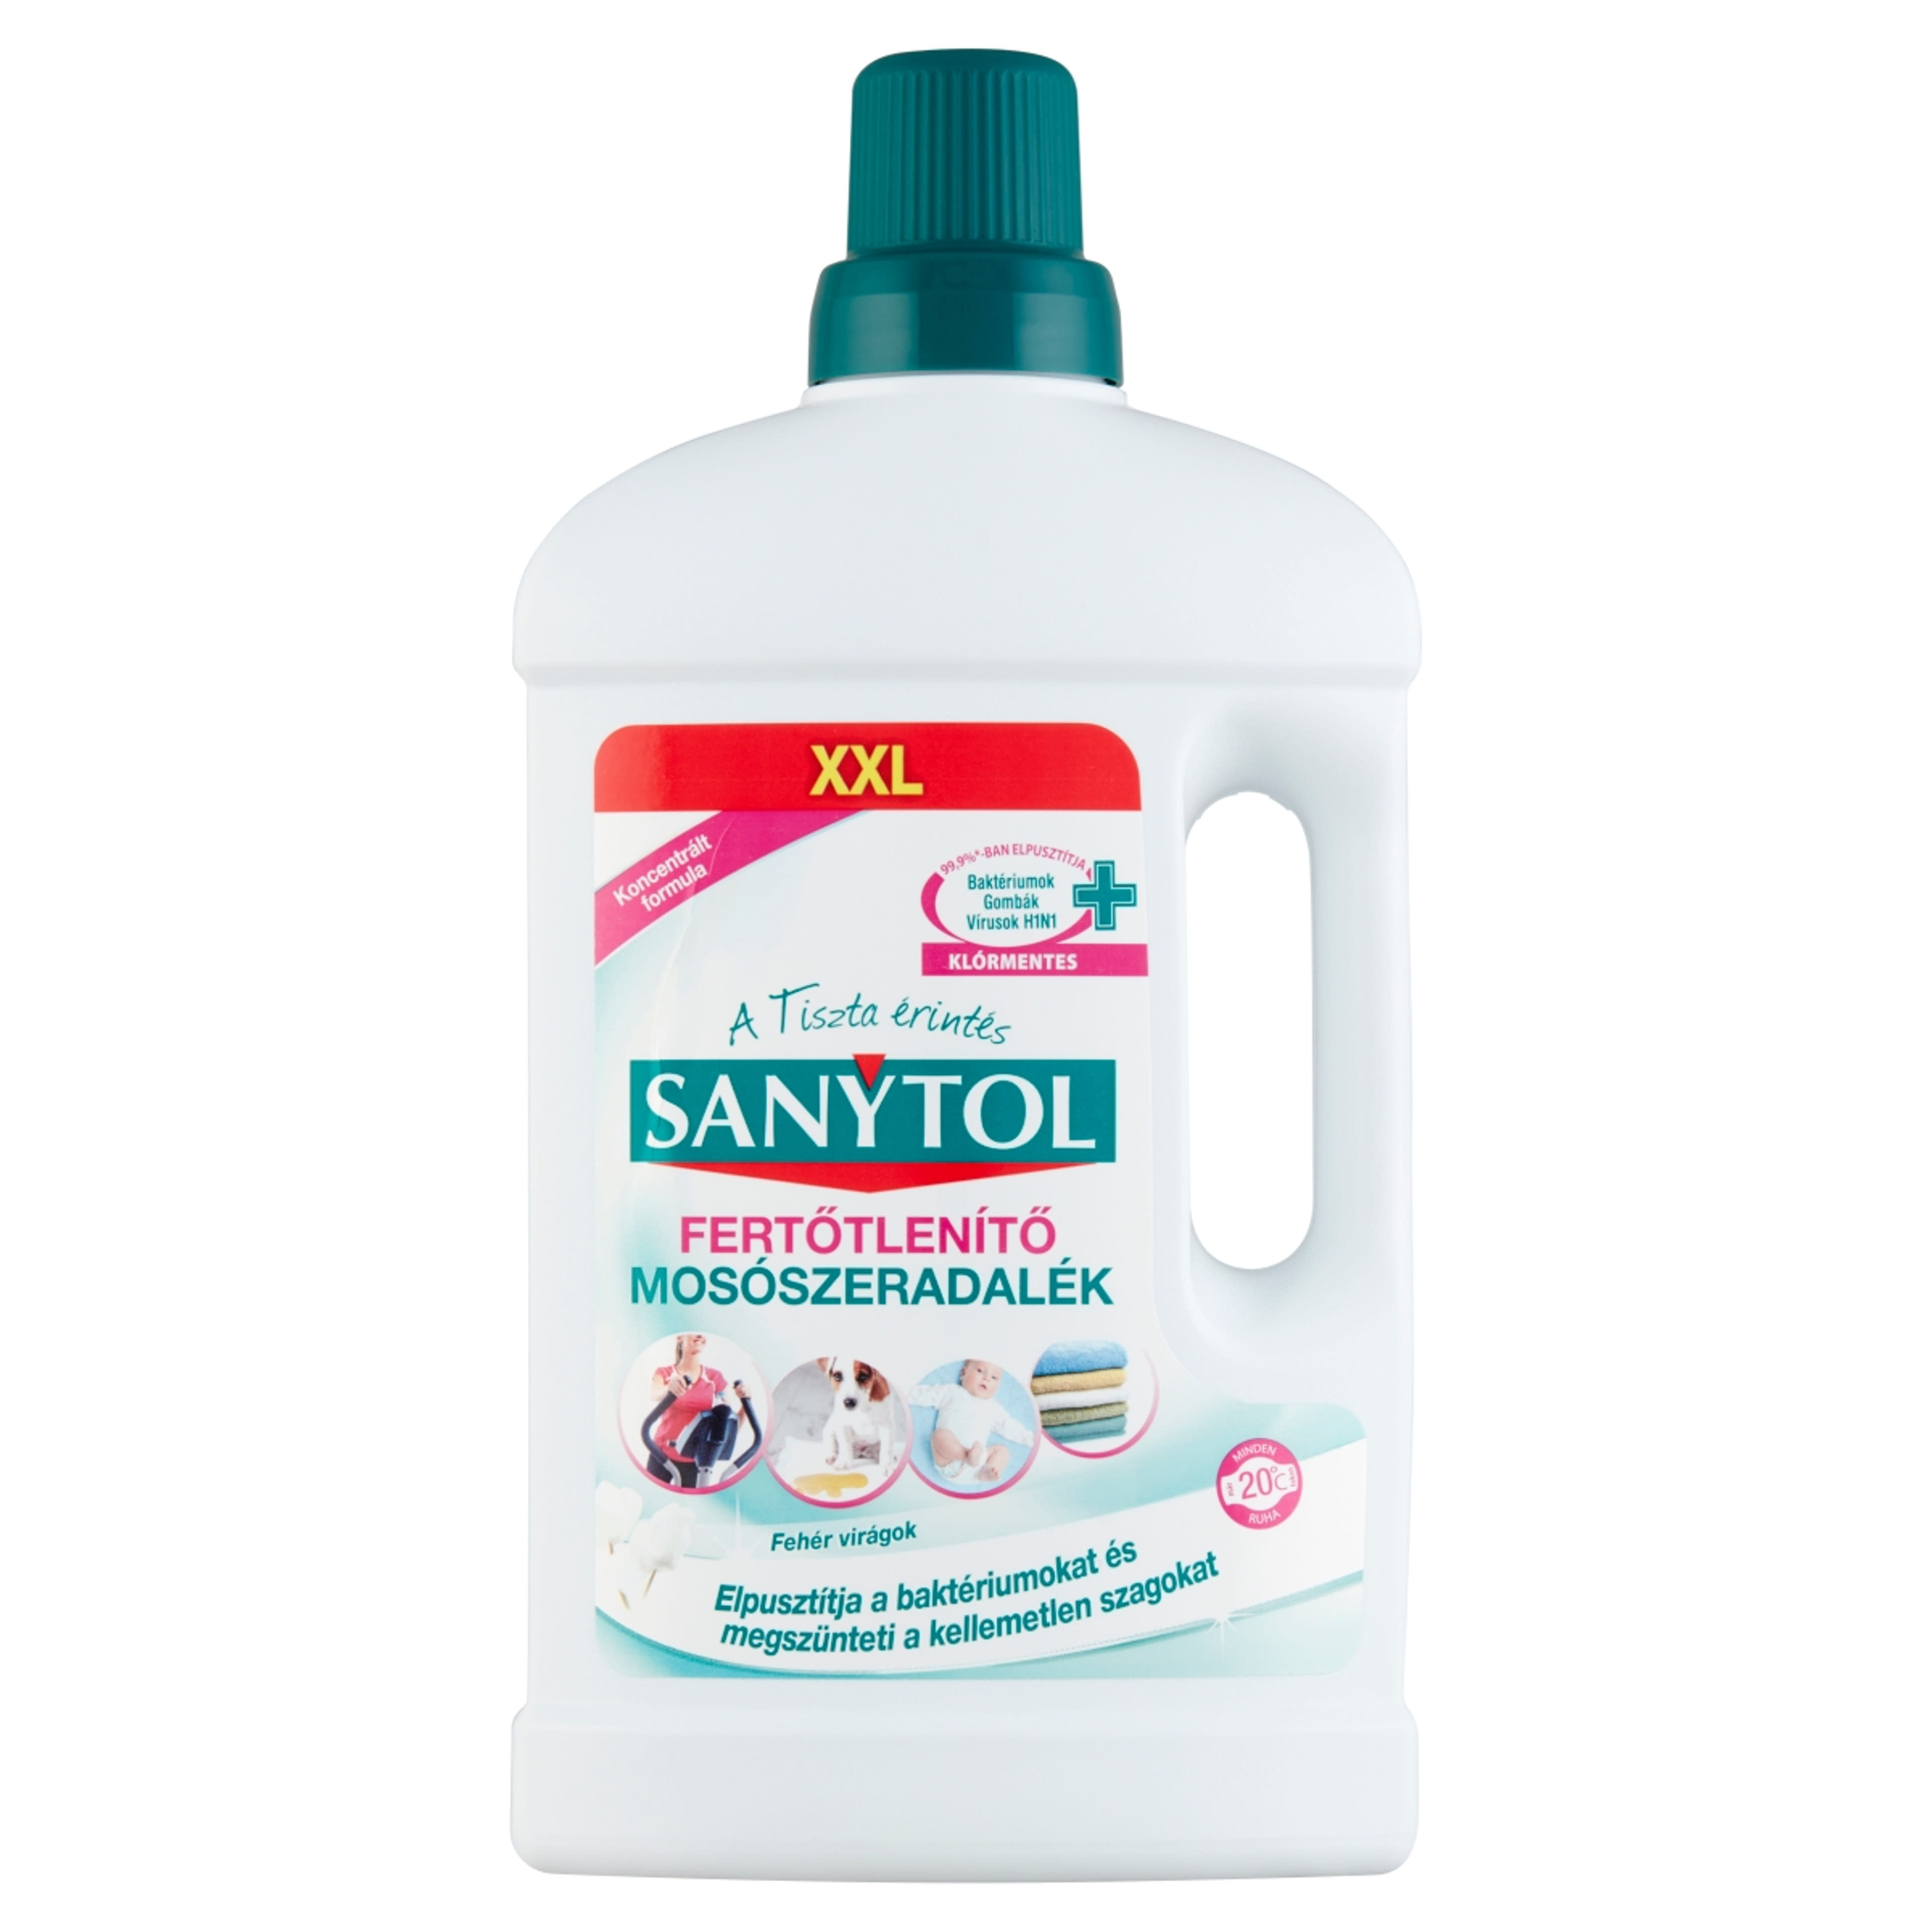 Sanytol fertőtlenítő mosószeradalék - 1 l